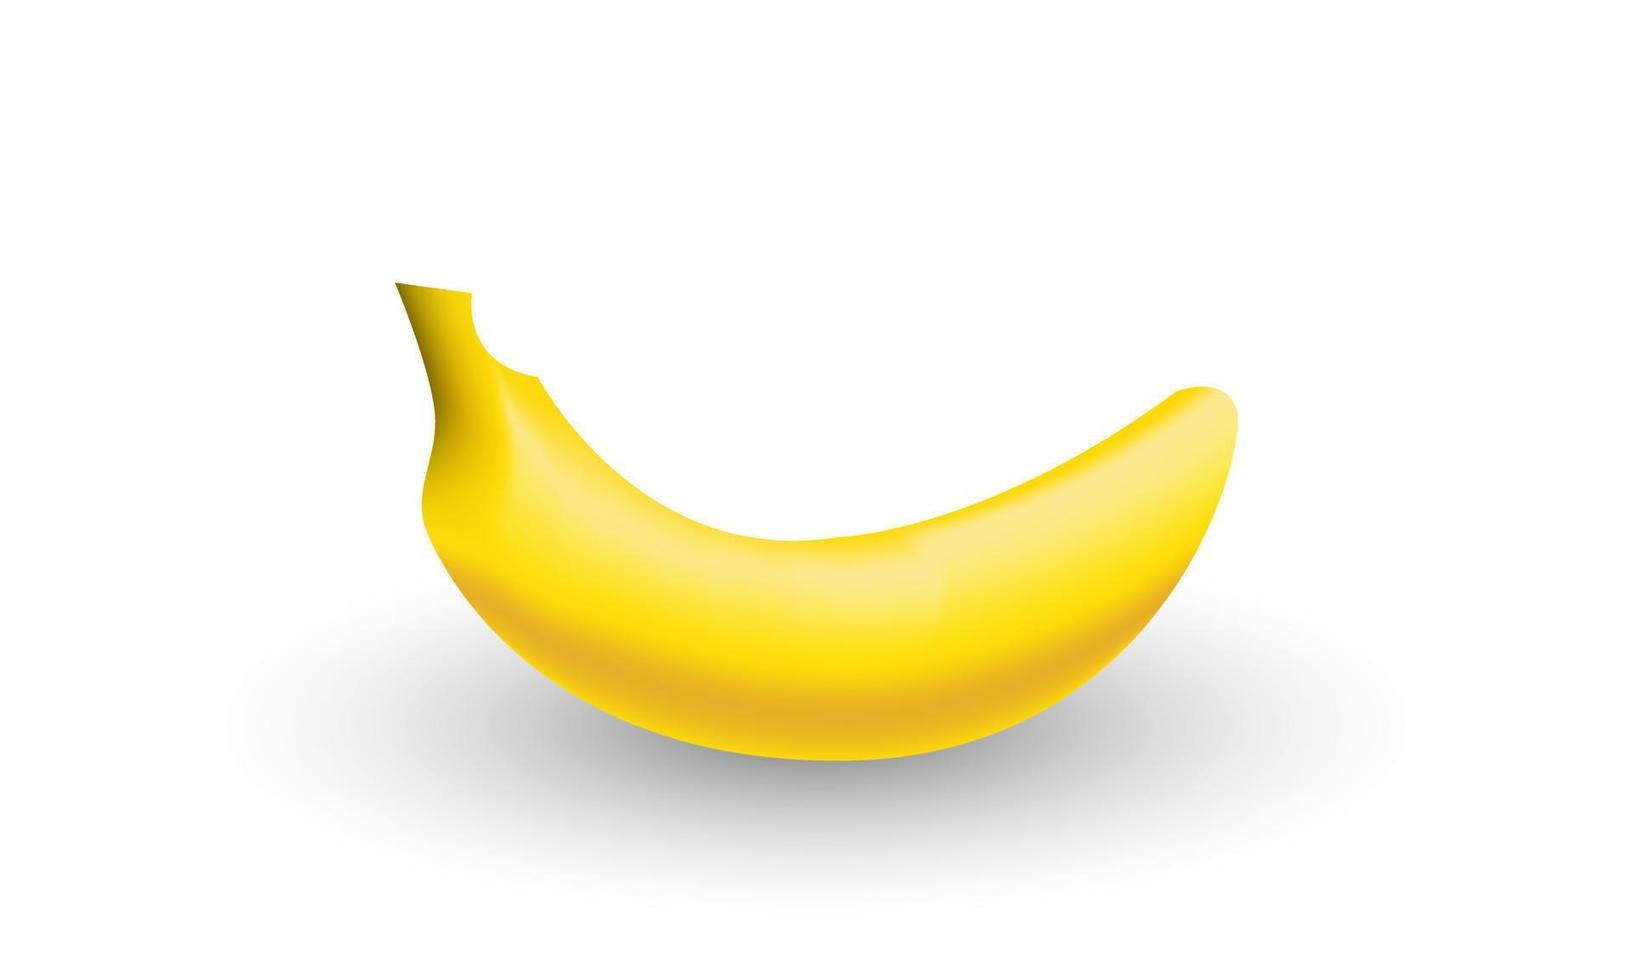 natureza única de frutas descascadas de banana amarela 3d isolada em vetor